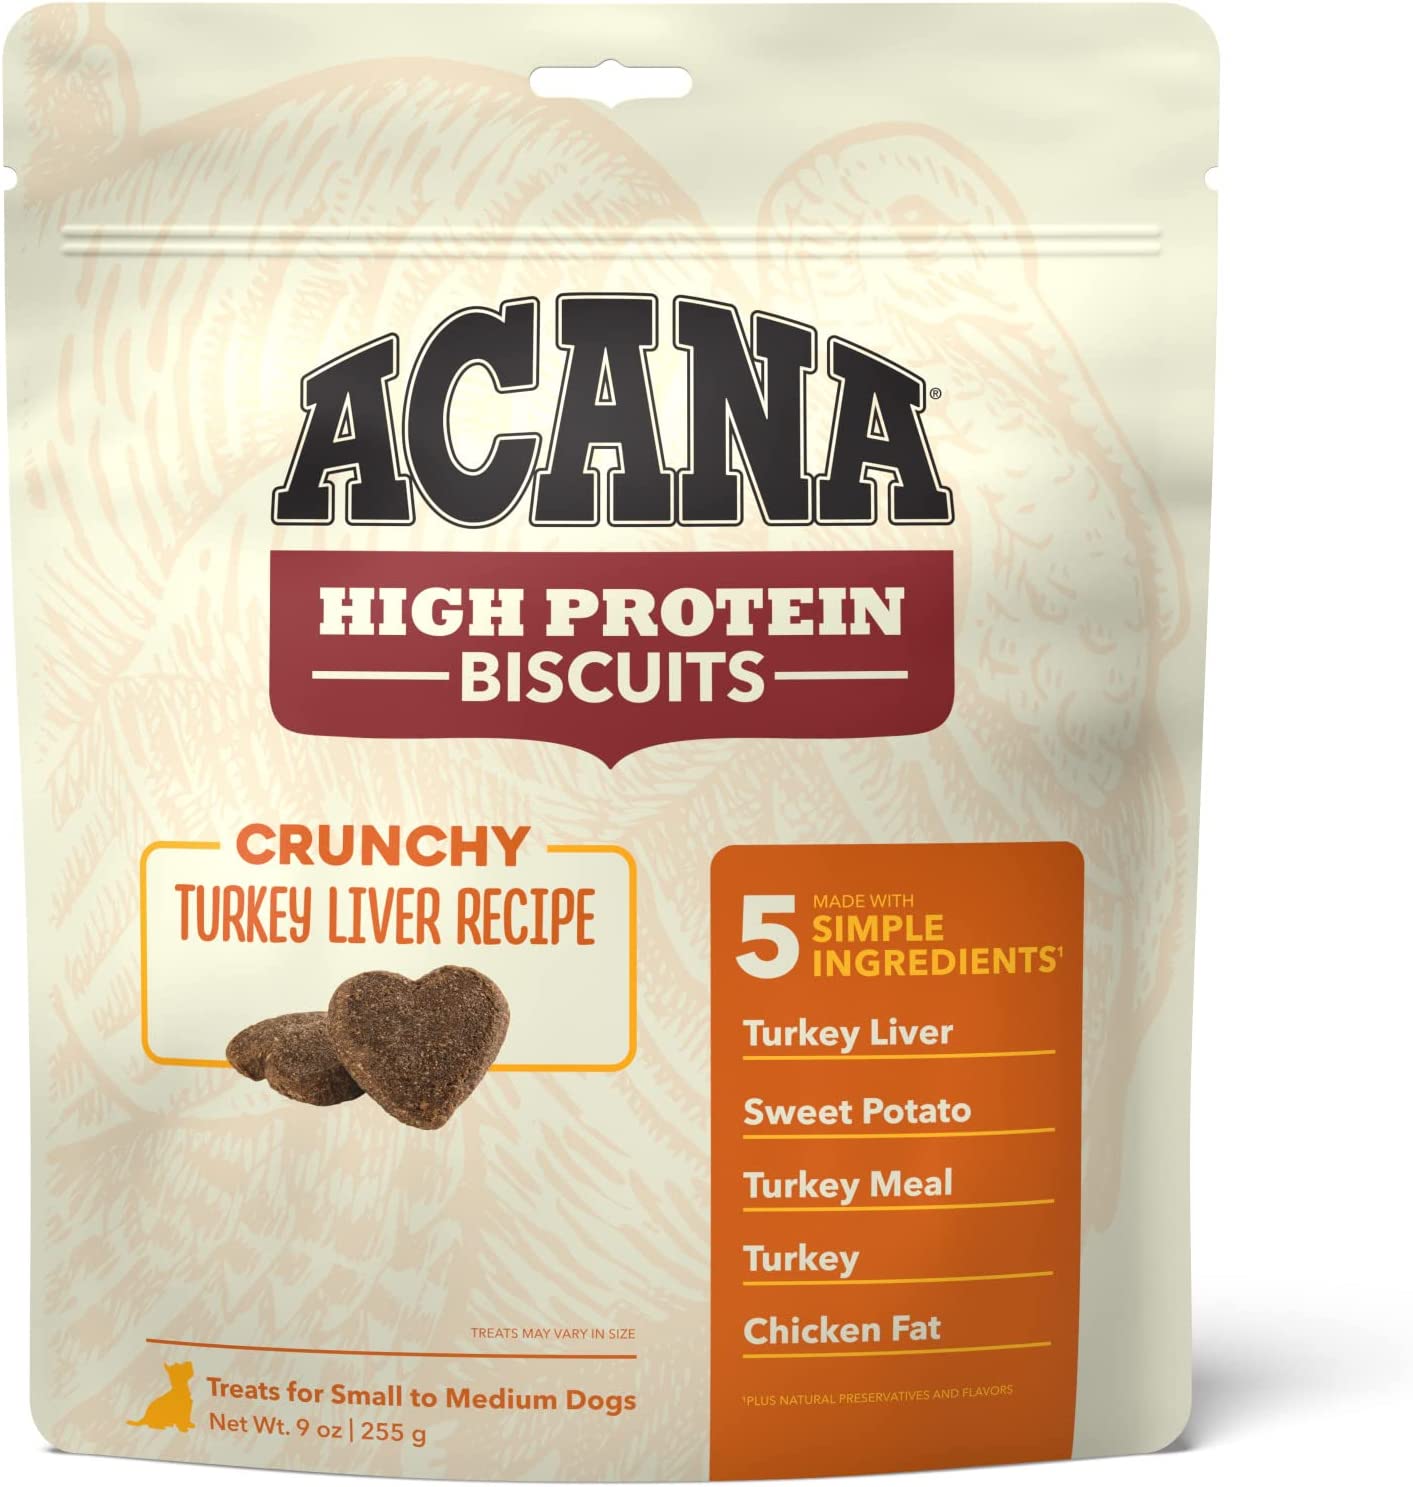 ACANA High-Protein Biscuits, Crunchy Turkey Liver Recipe - 9oz